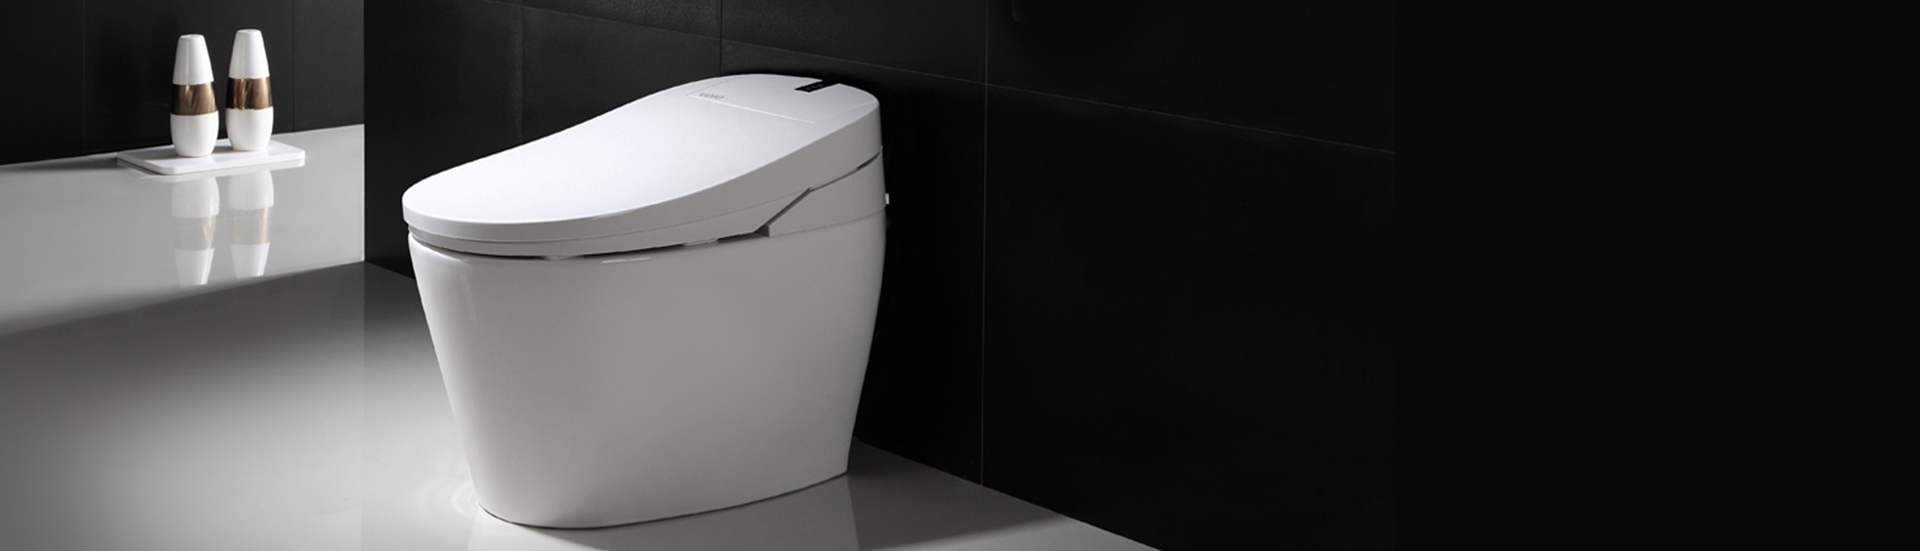 Smart Toilet Manufacturer